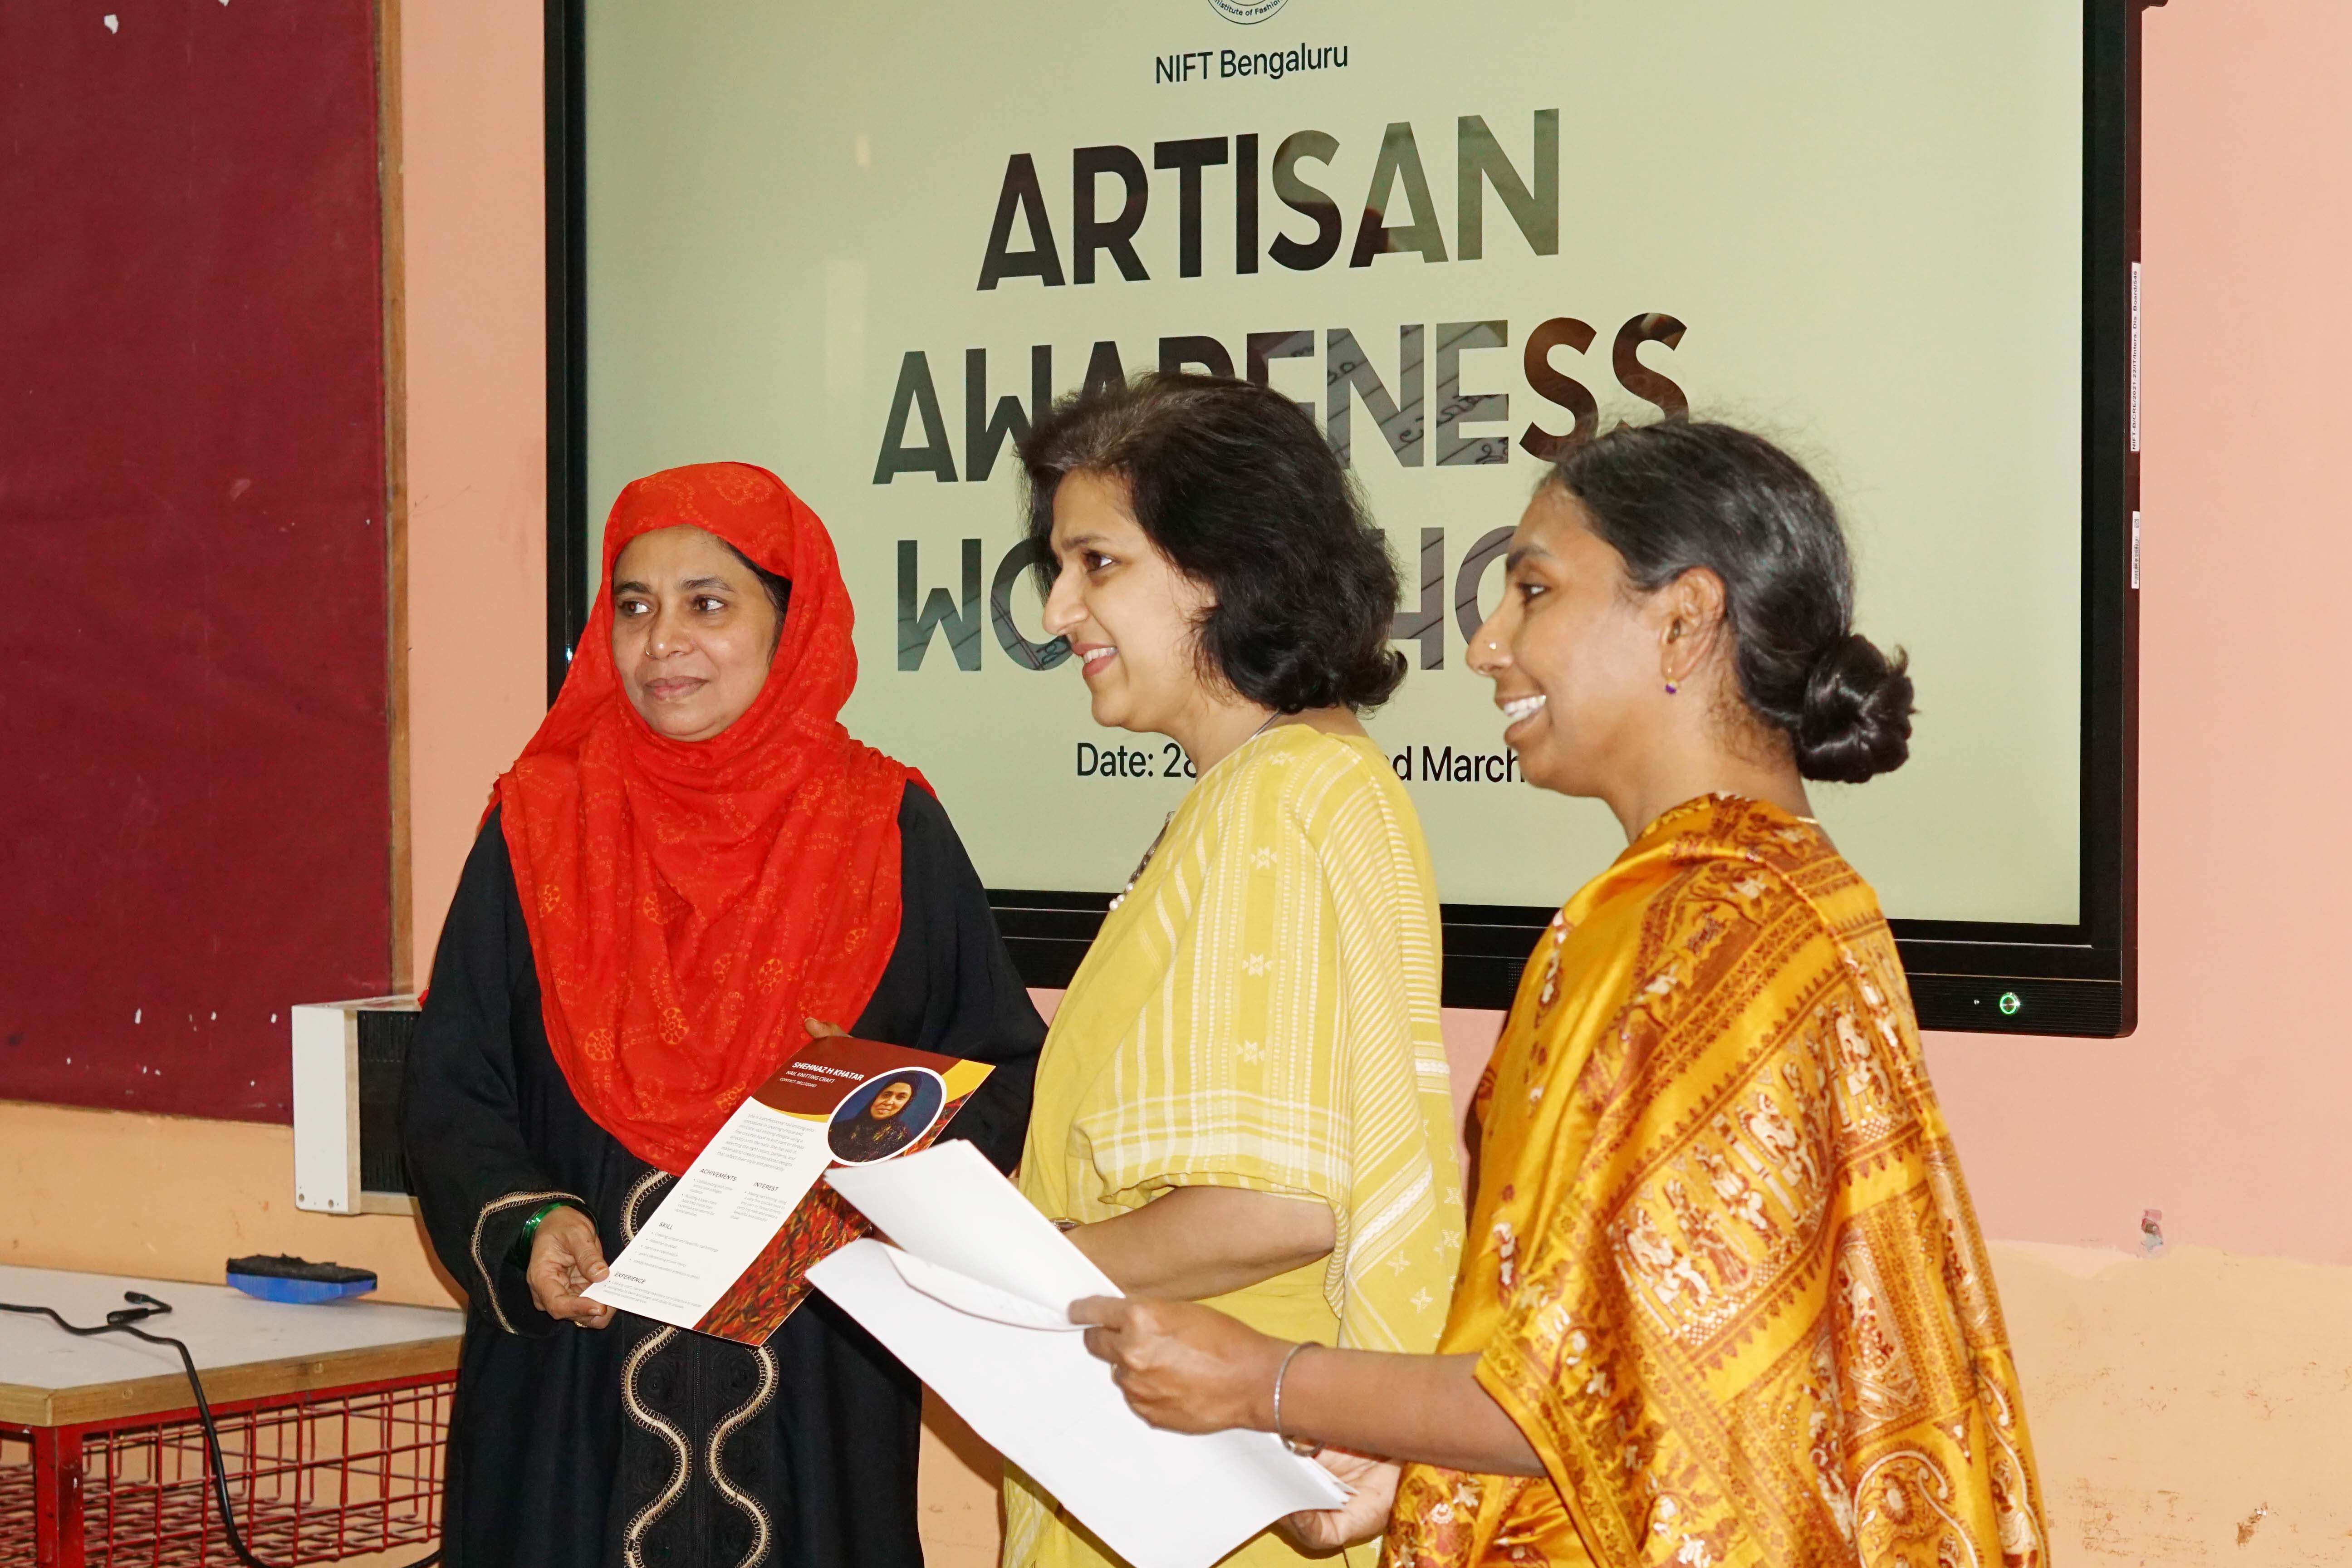 Artisan Awareness workshop